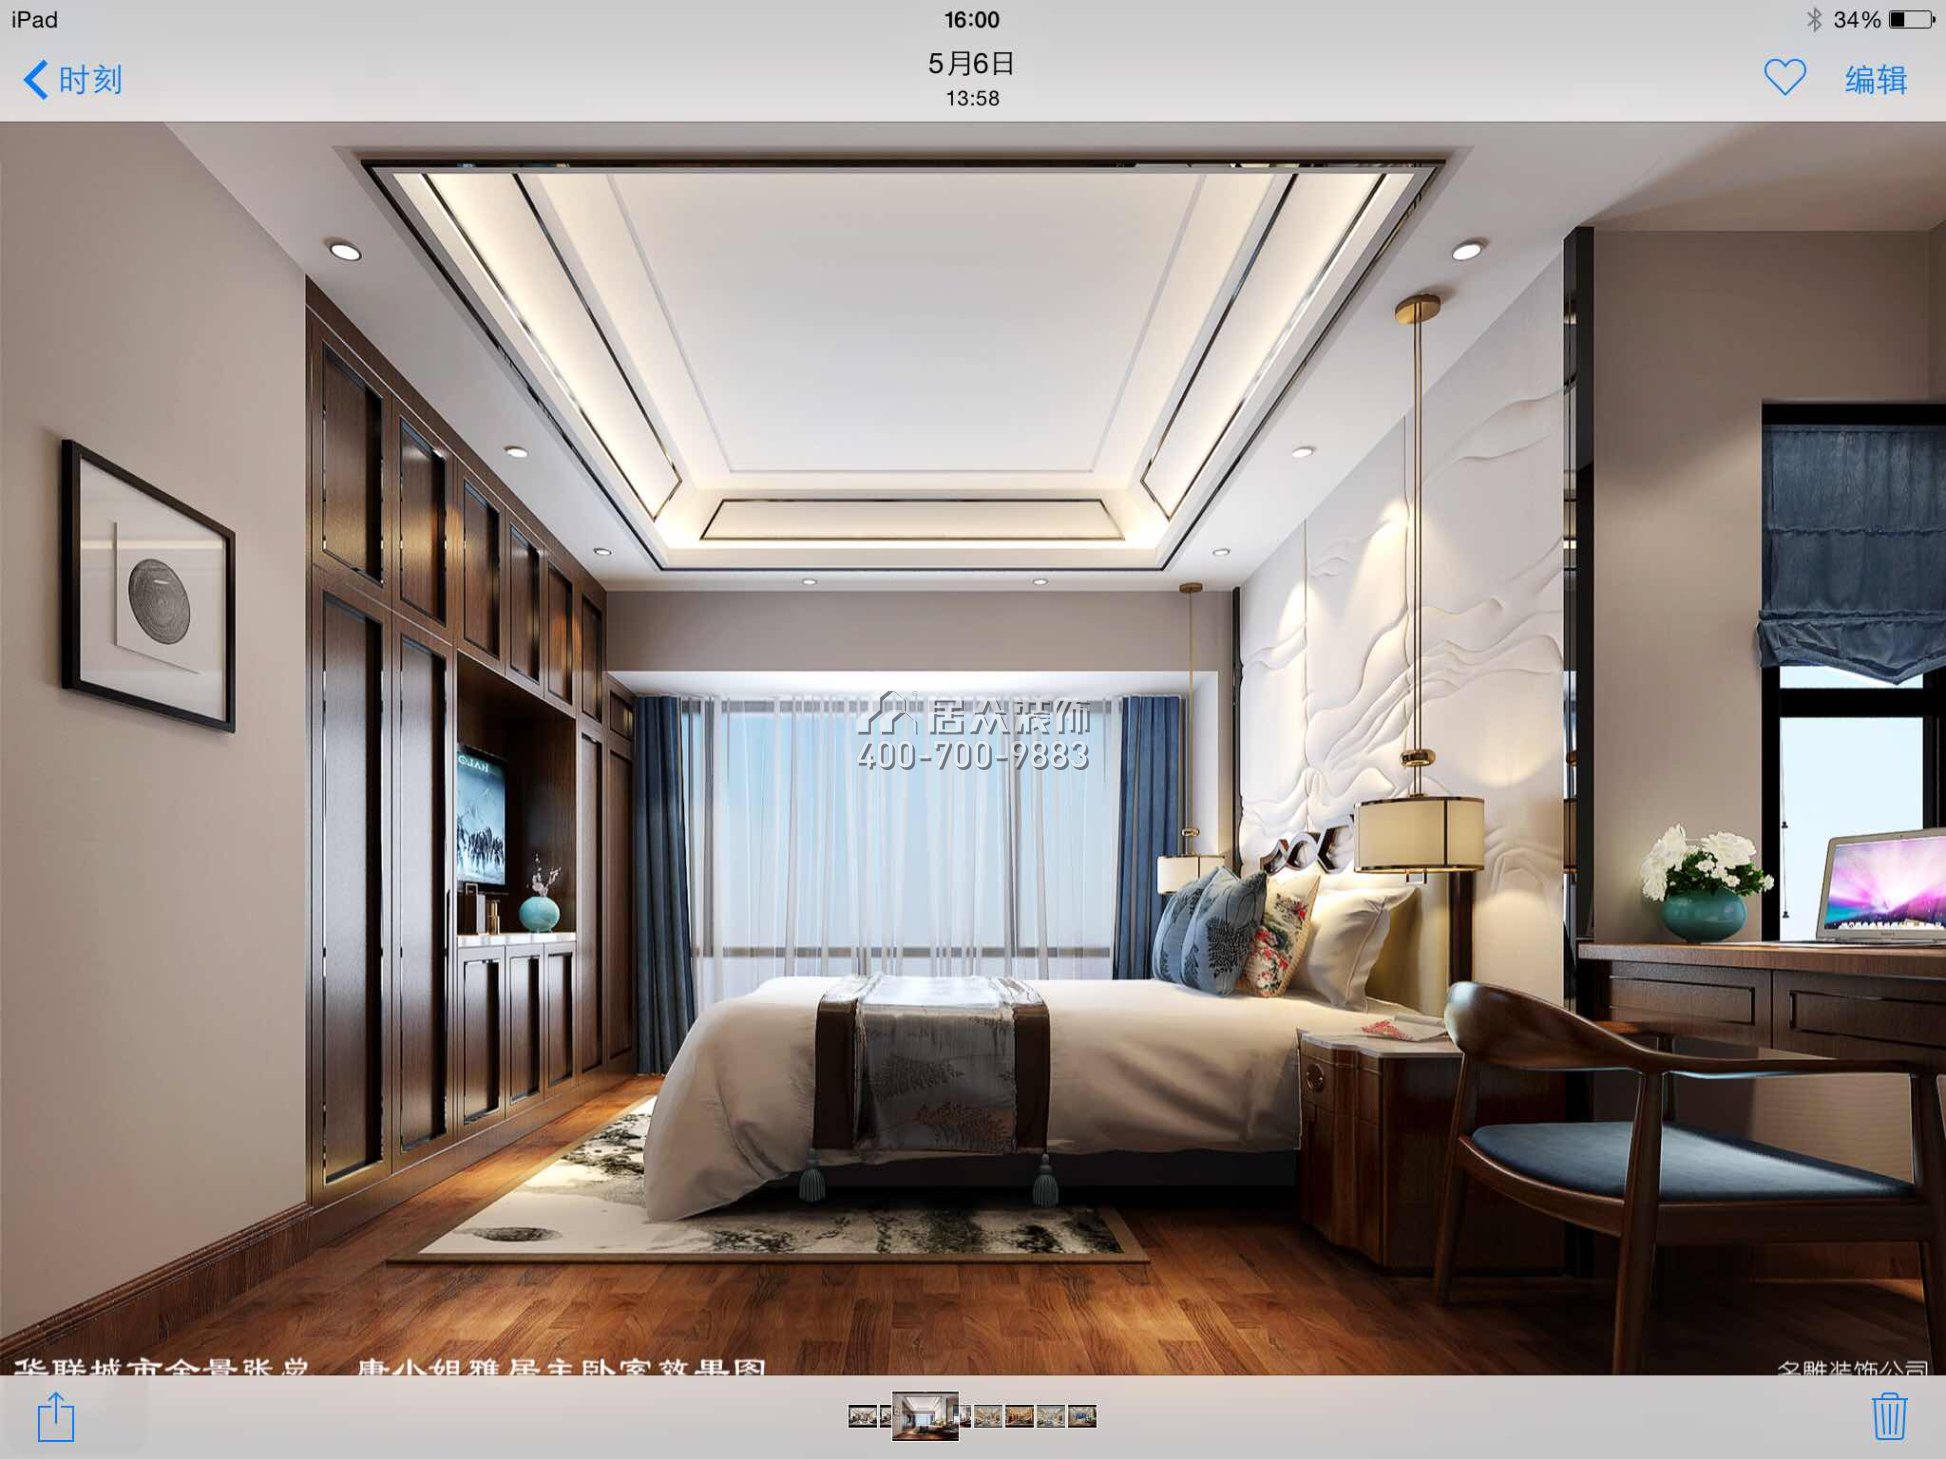 華聯城市全景花園170平方米現代簡約風格平層戶型臥室裝修效果圖